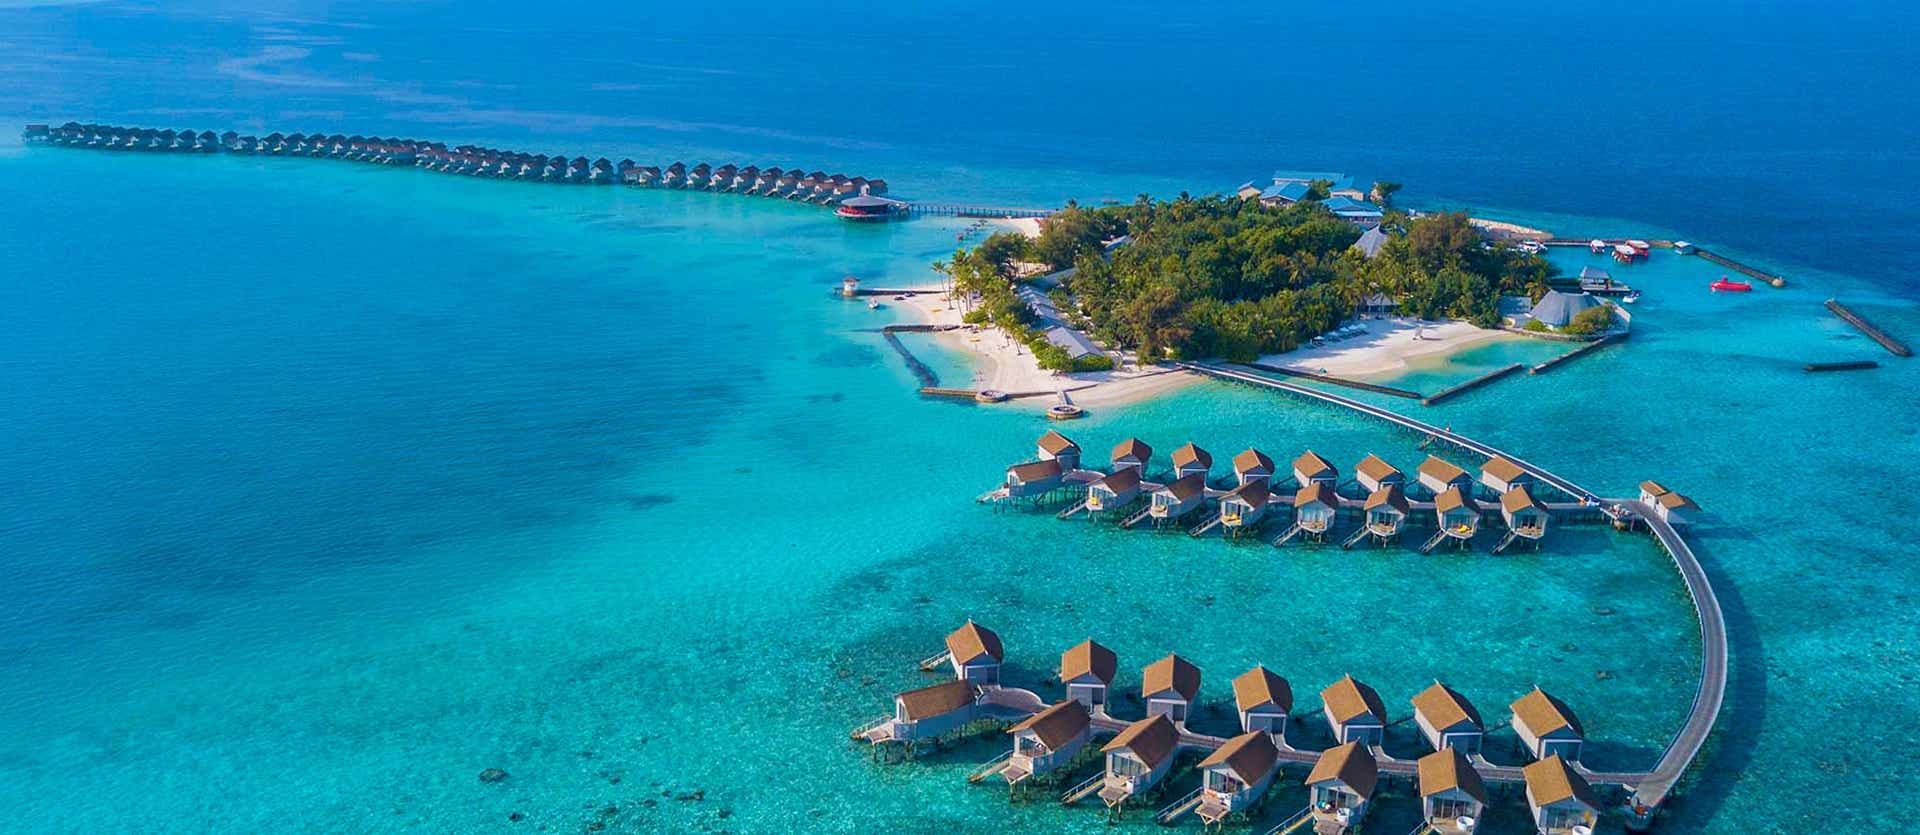  Centara Ras Fushi Resort & Spa <span class="iconos separador"></span> Maldives